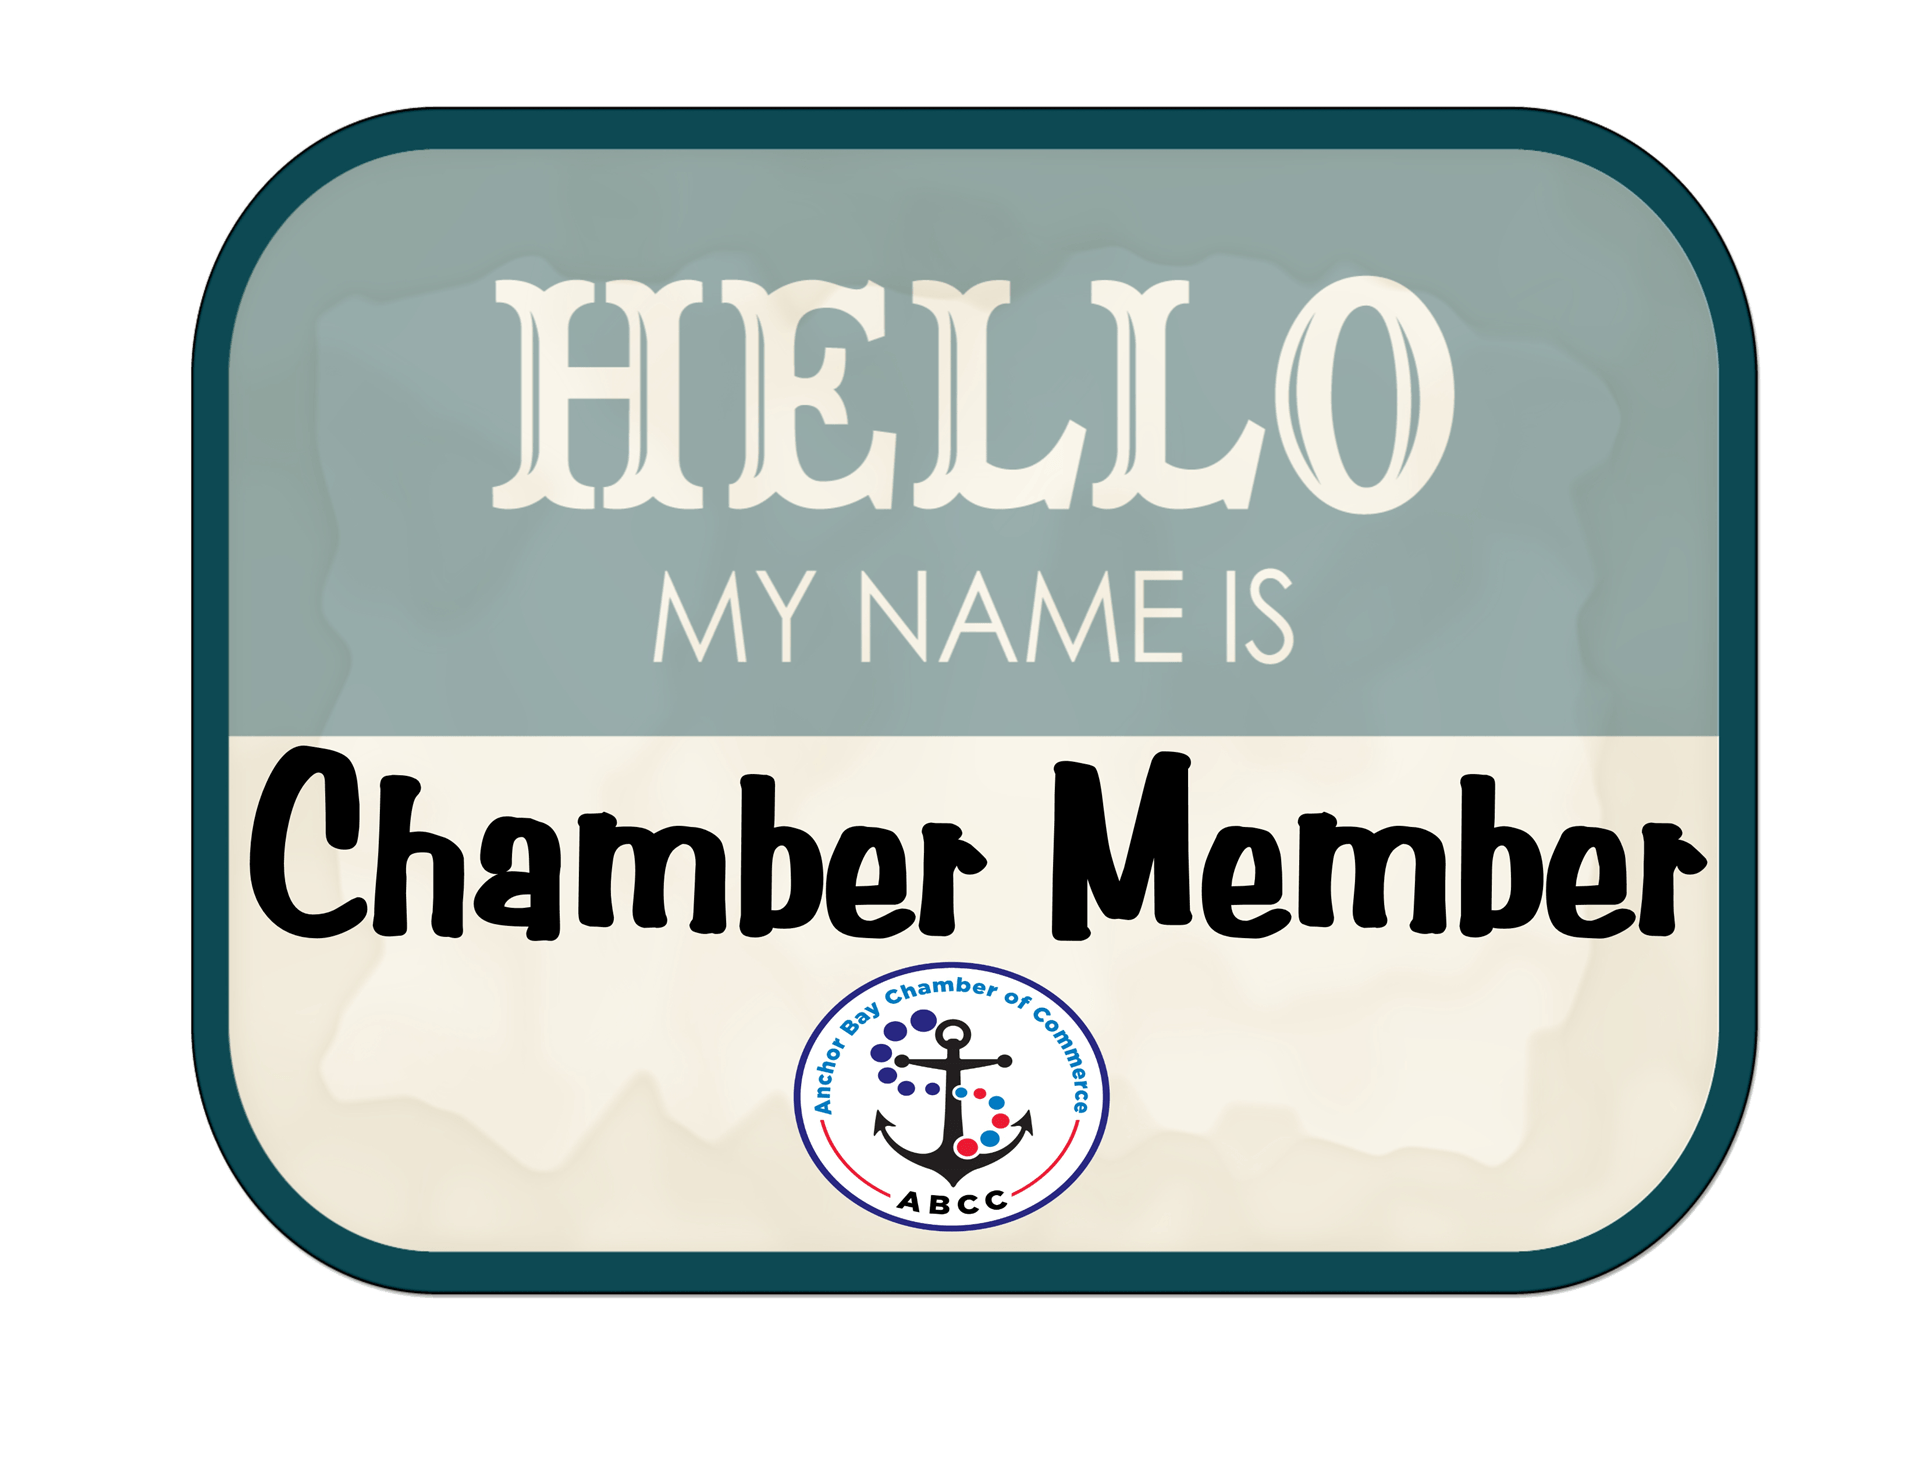 Chamber member Badge